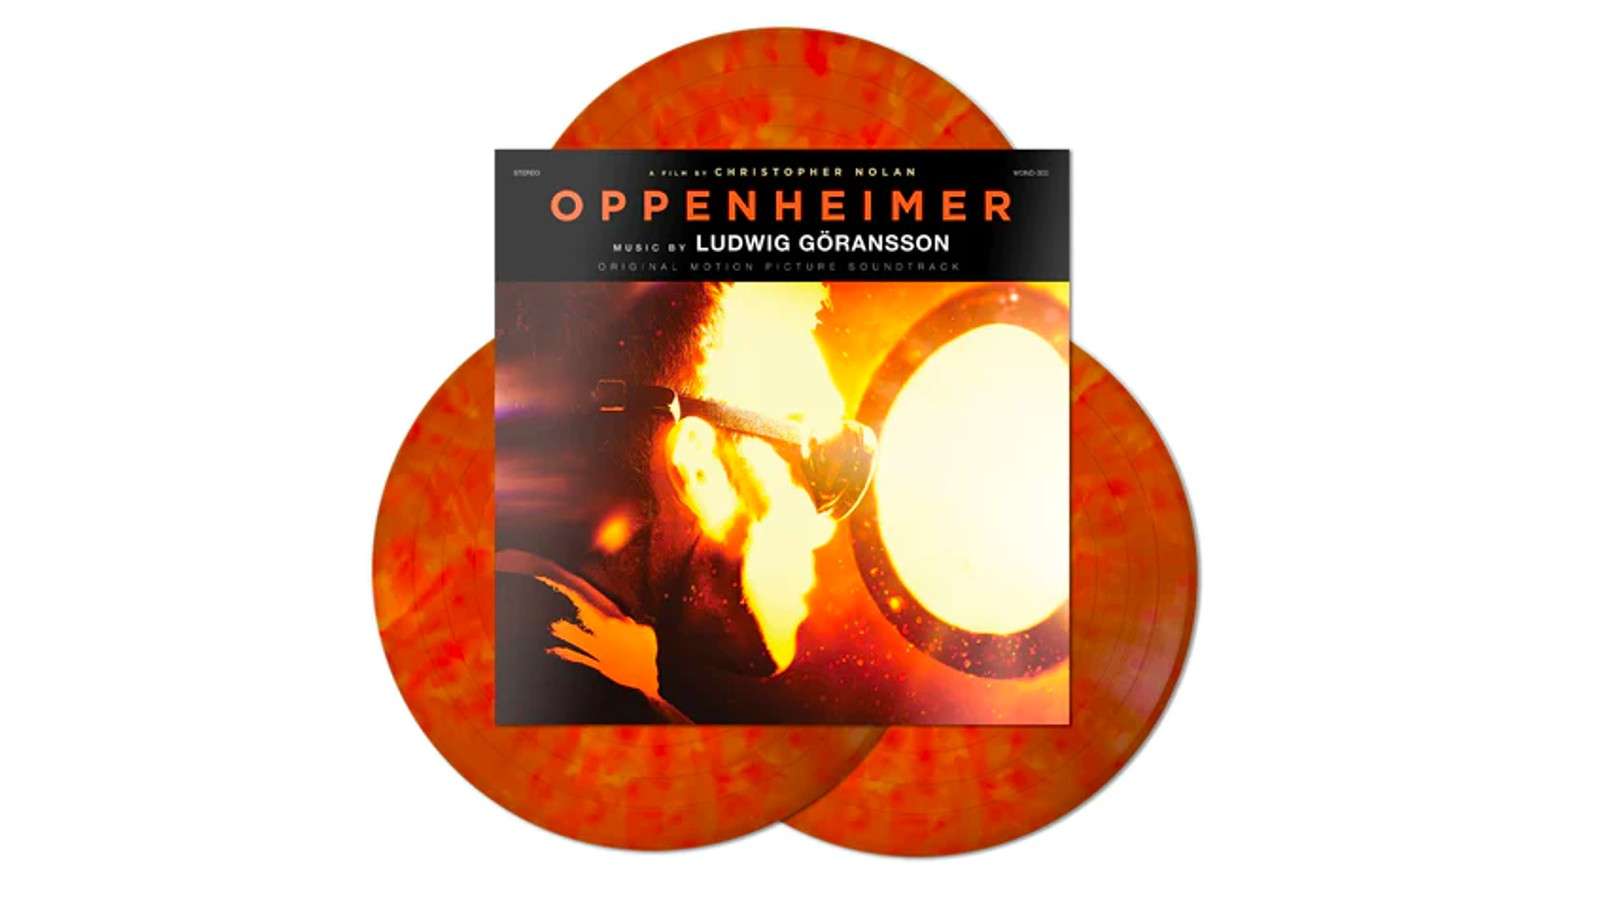 The Oppenheimer vinyl soundtrack from Mondo